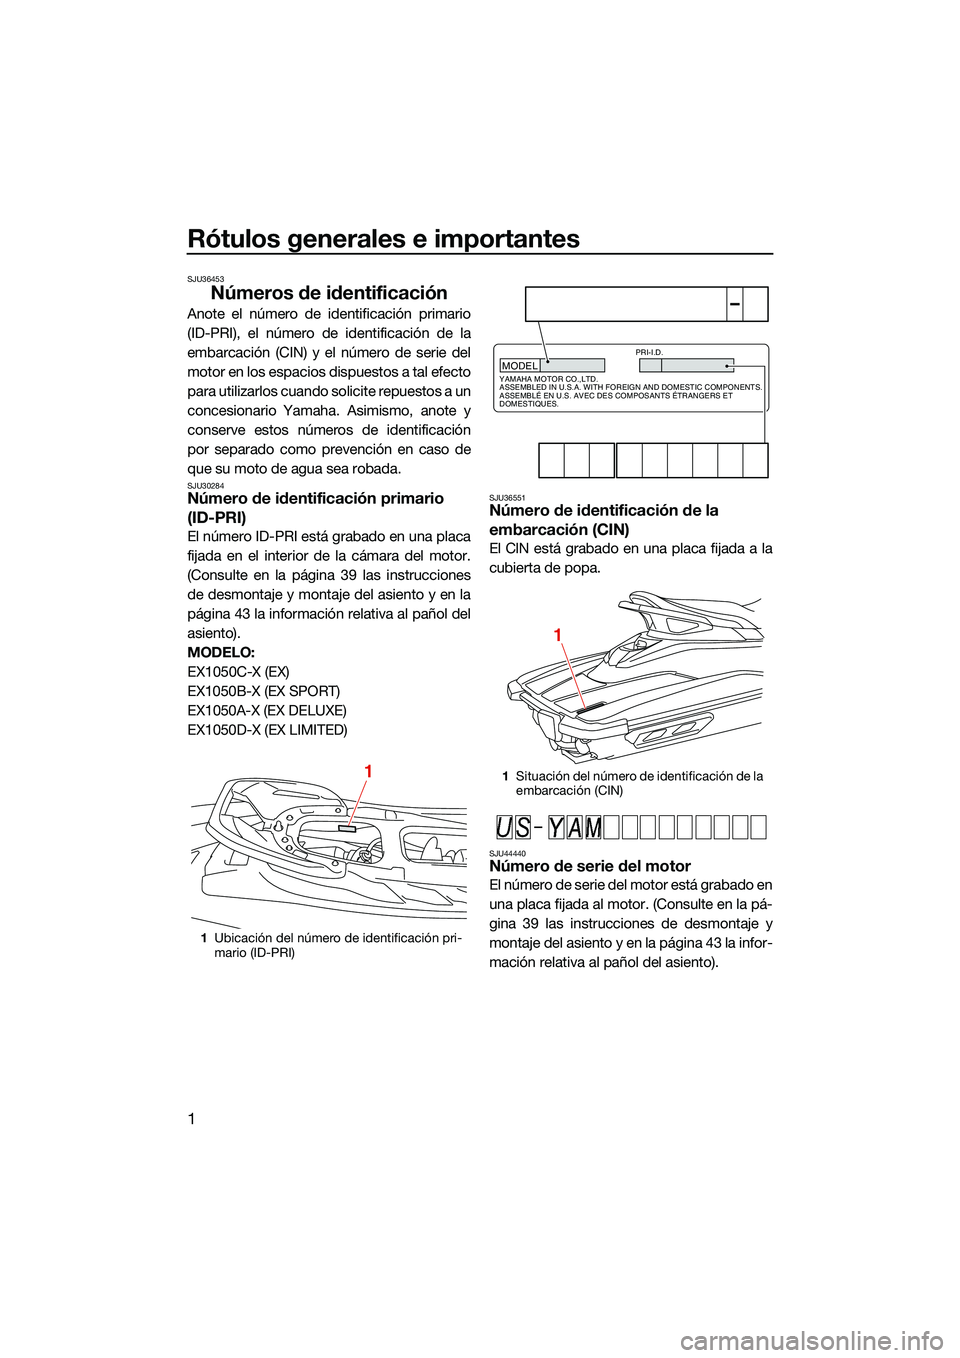 YAMAHA EX LIMITED 2022  Manuale de Empleo (in Spanish) Rótulos generales e importantes
1
SJU36453
Números de identificación
Anote el número de identificación primario
(ID-PRI), el número de identificación de la
embarcación (CIN) y el número de se